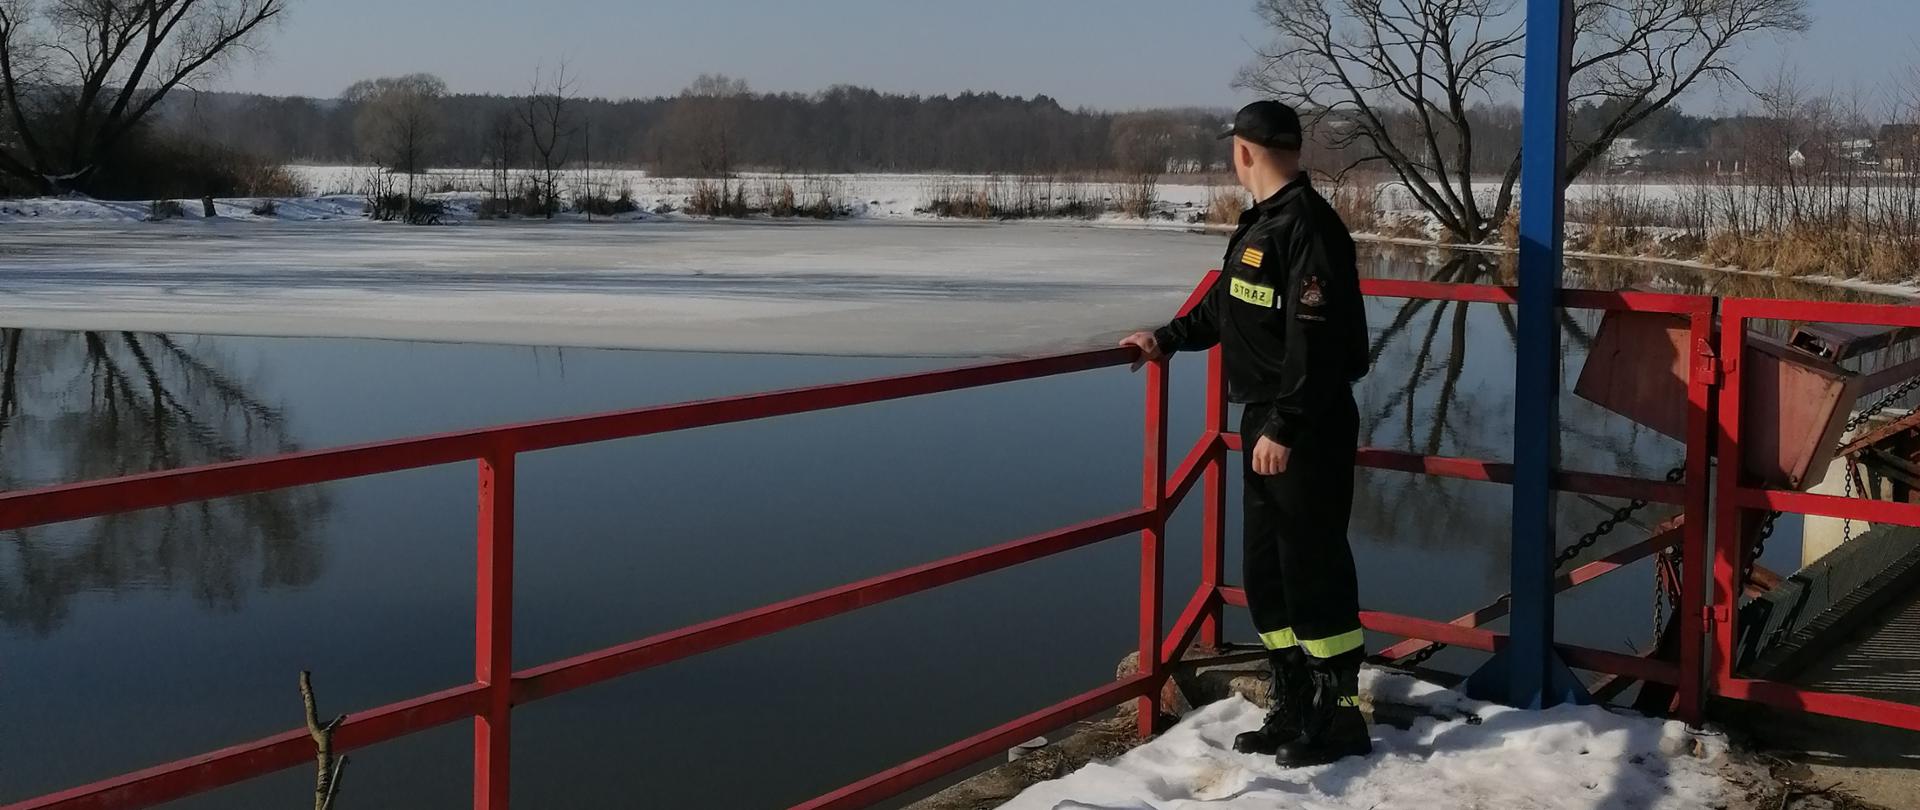 Na pierwszym planie widać stojącego strażaka na pomoście przy rzece Kamienna. Na drugim planie widać zbiornik wodny oraz pobliskie łąki